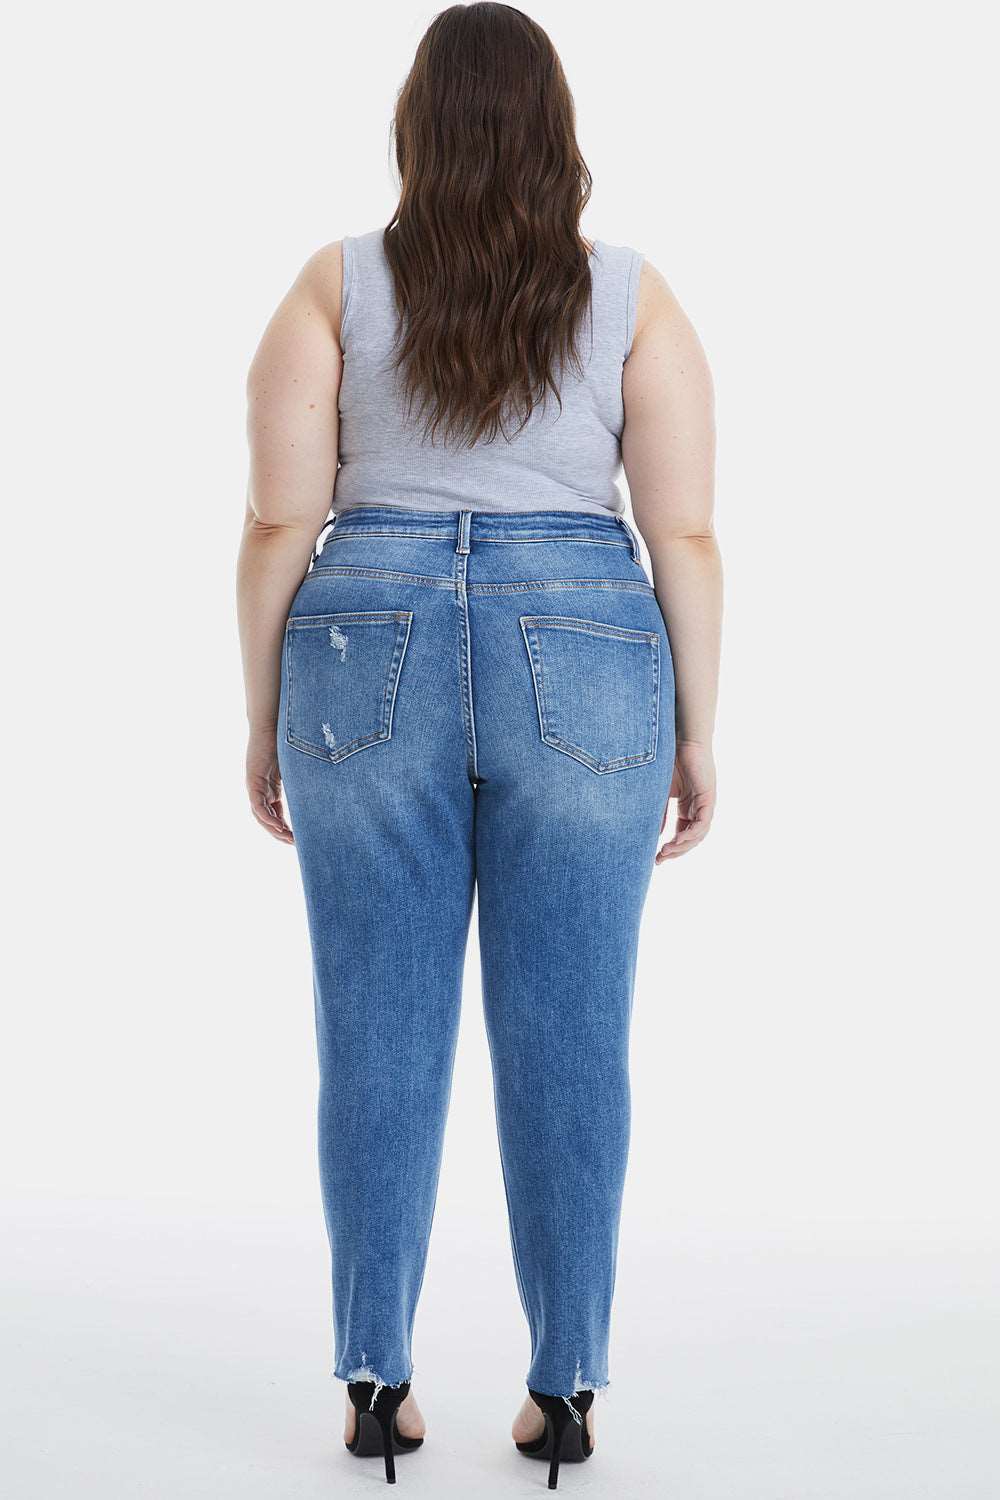 BAYEAS Full Size High Waist Distressed Raw Hew Skinny Jeans Bottom wear